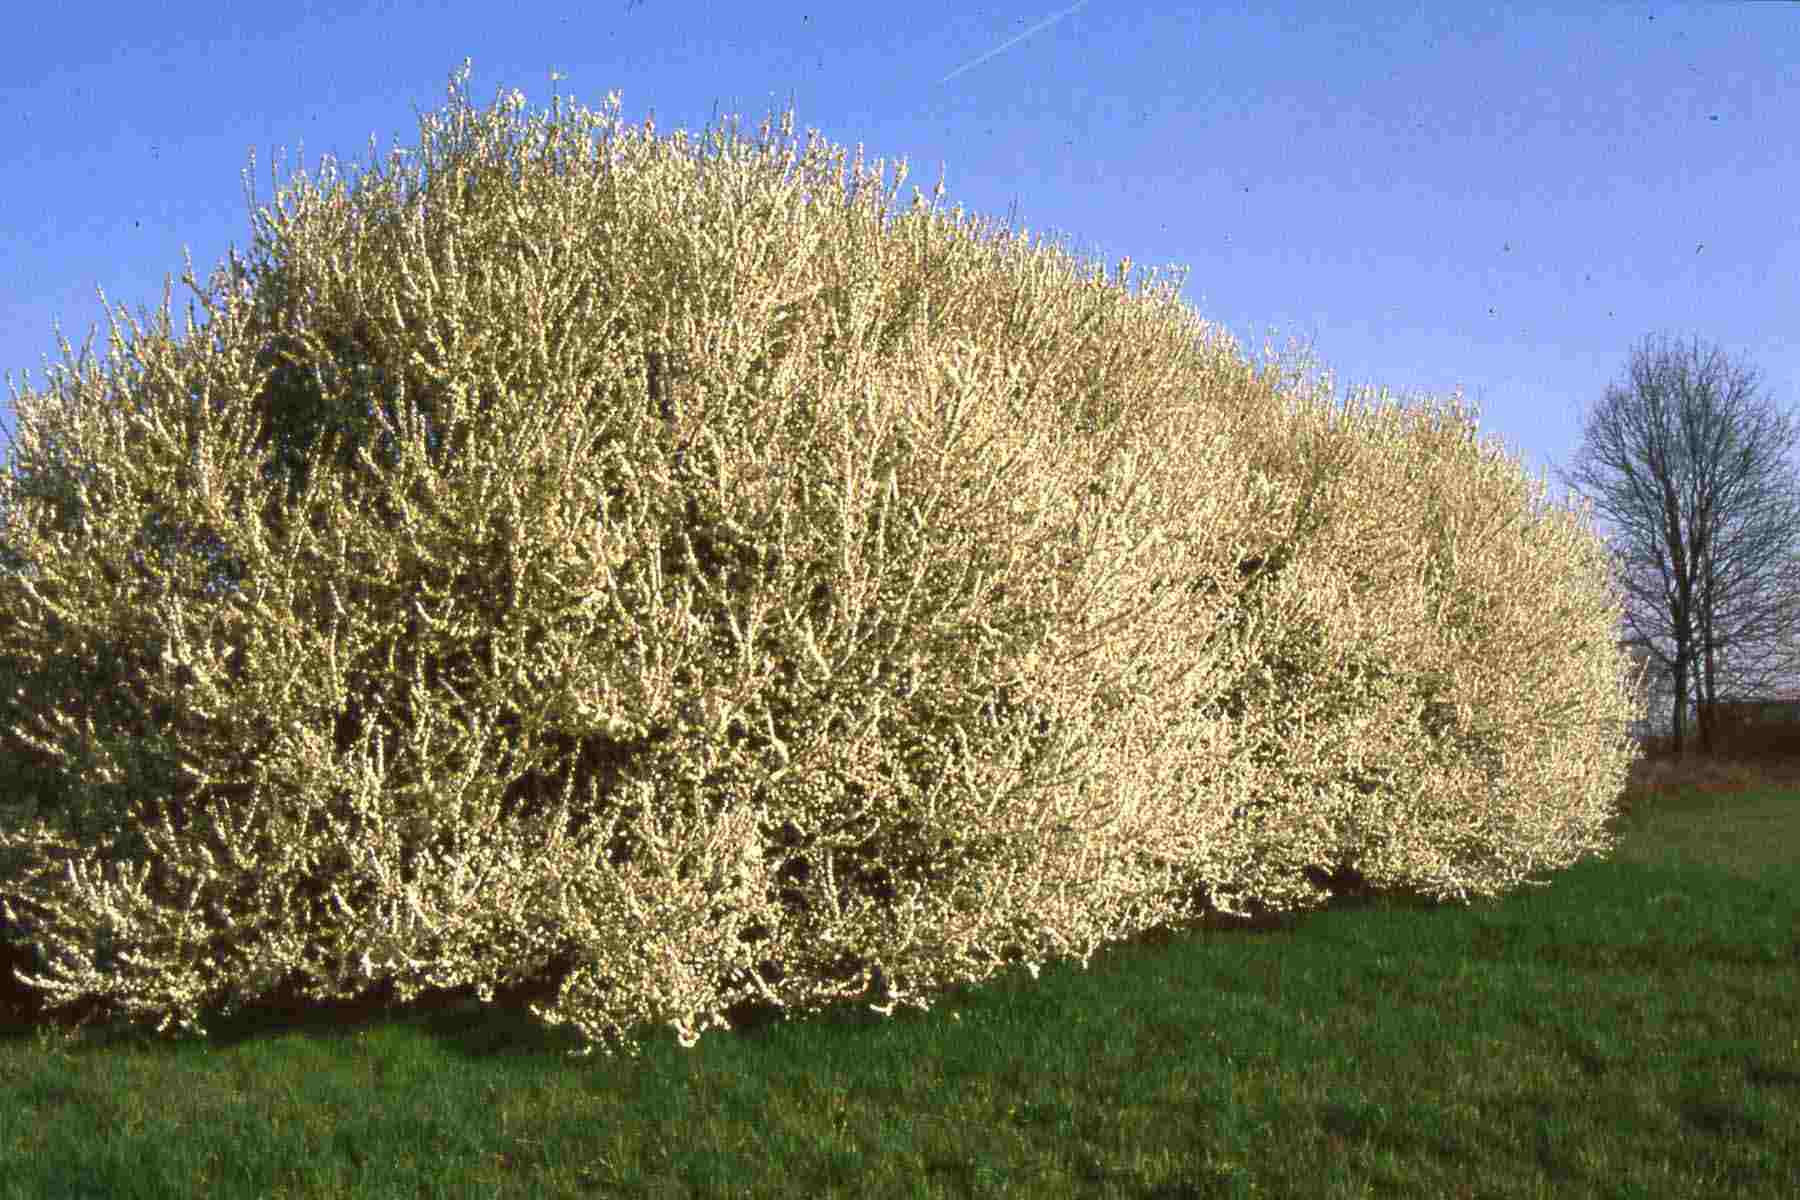 Folta siepe di prugnolo (Prunus spinosa) nella campagna astigiana